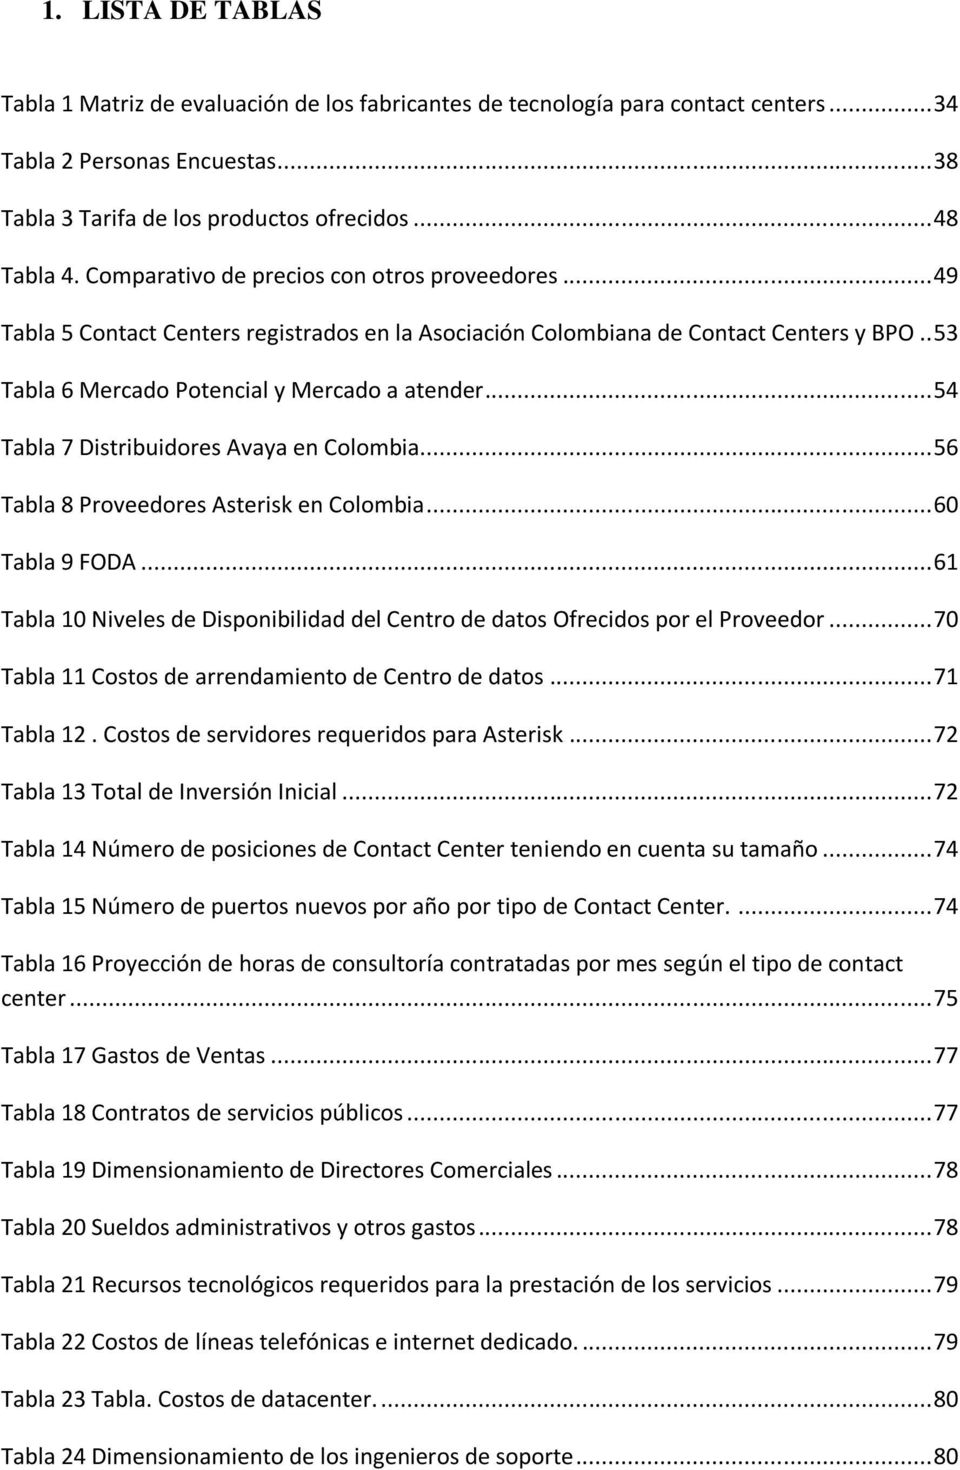 .. 54 Tabla 7 Distribuidores Avaya en Colombia... 56 Tabla 8 Proveedores Asterisk en Colombia... 60 Tabla 9 FODA... 61 Tabla 10 Niveles de Disponibilidad del Centro de datos Ofrecidos por el Proveedor.